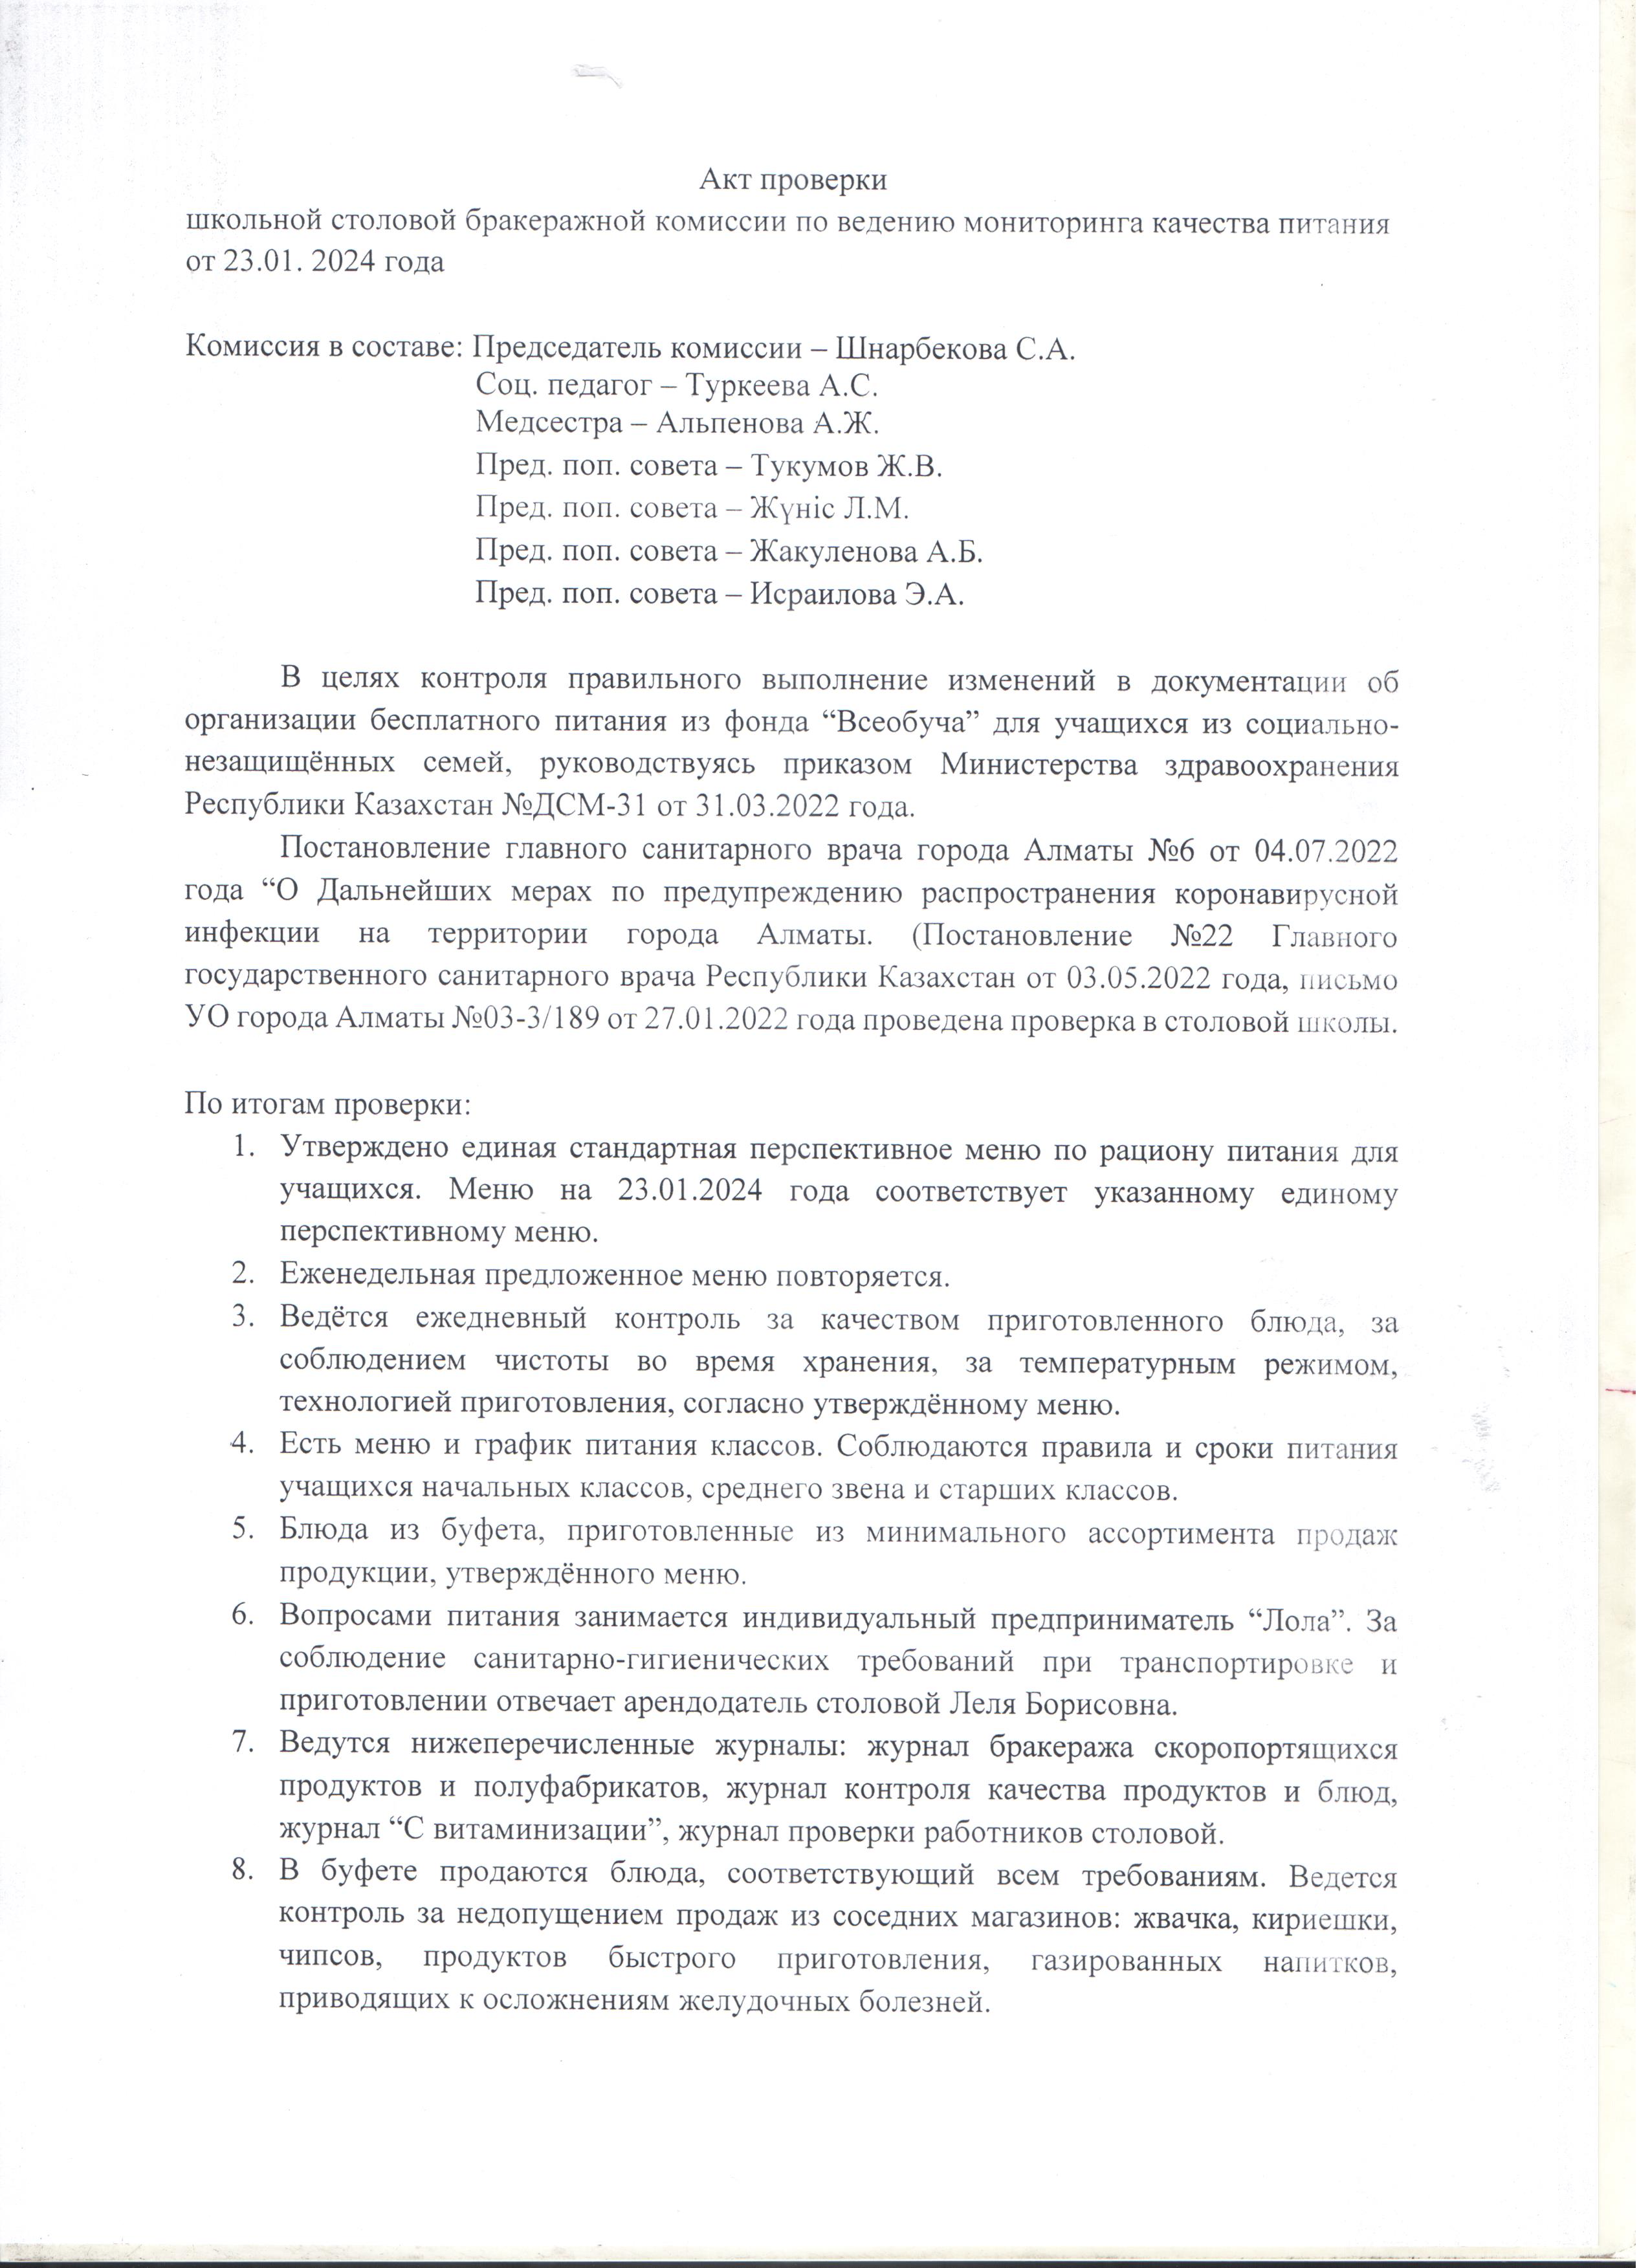 АКТ проверки бракеражной комиссии на 23.01.2024 год